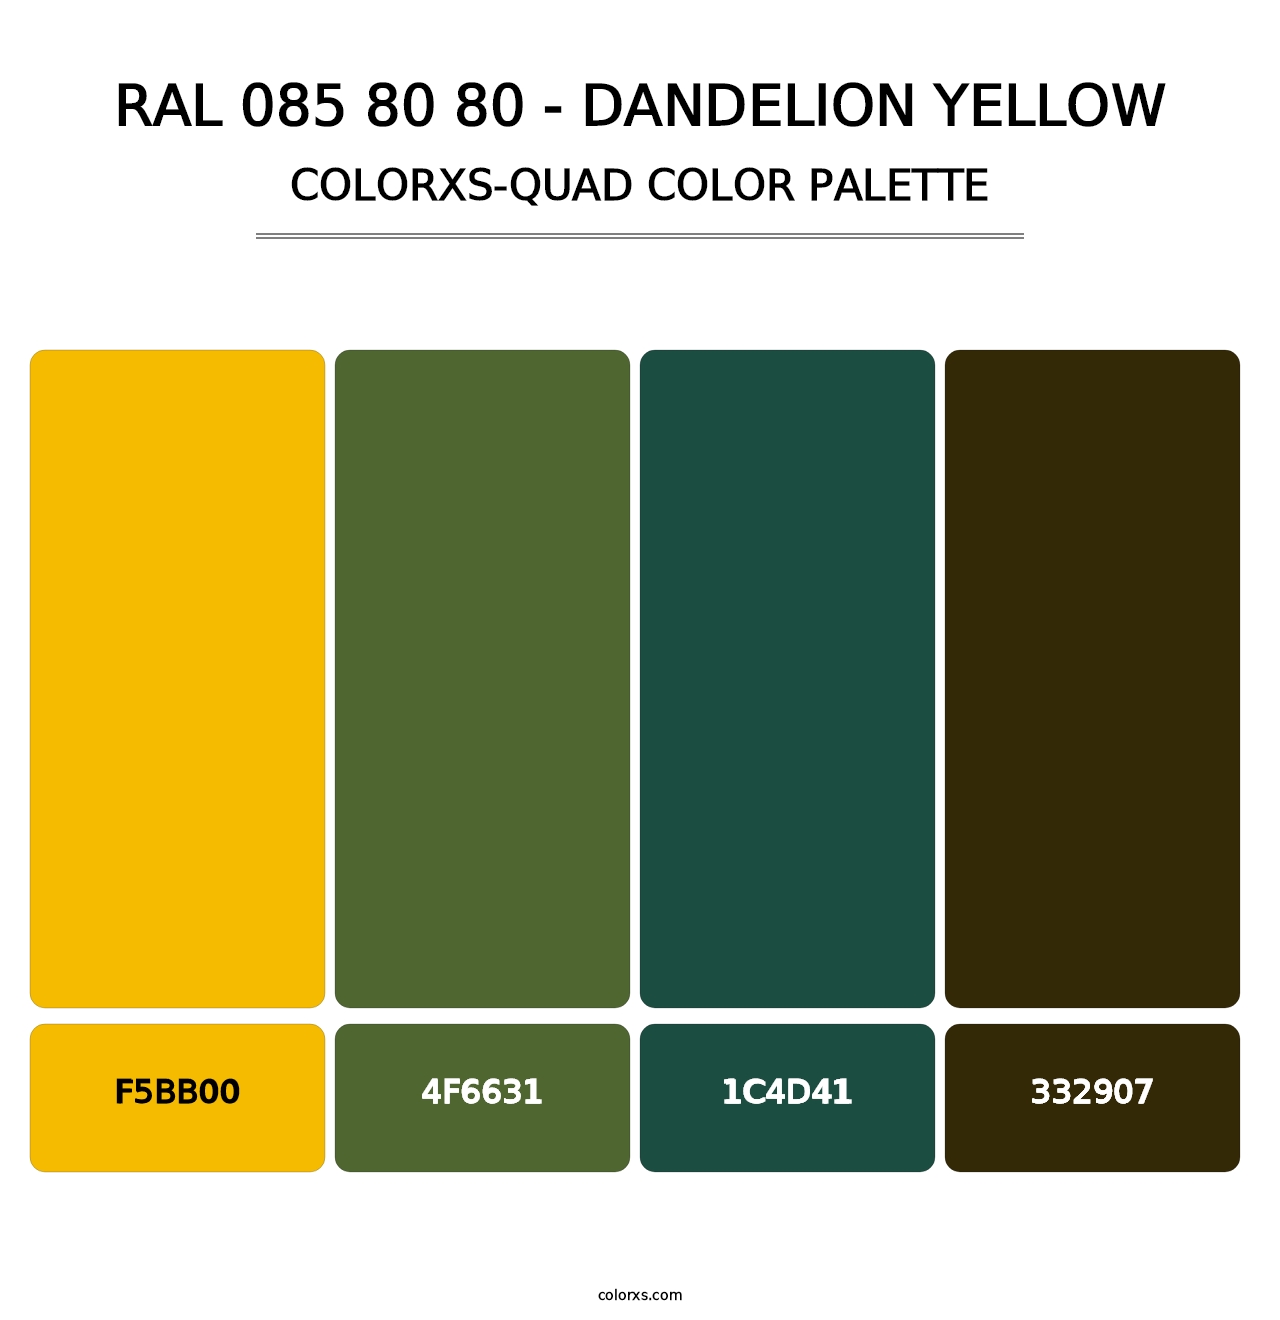 RAL 085 80 80 - Dandelion Yellow - Colorxs Quad Palette